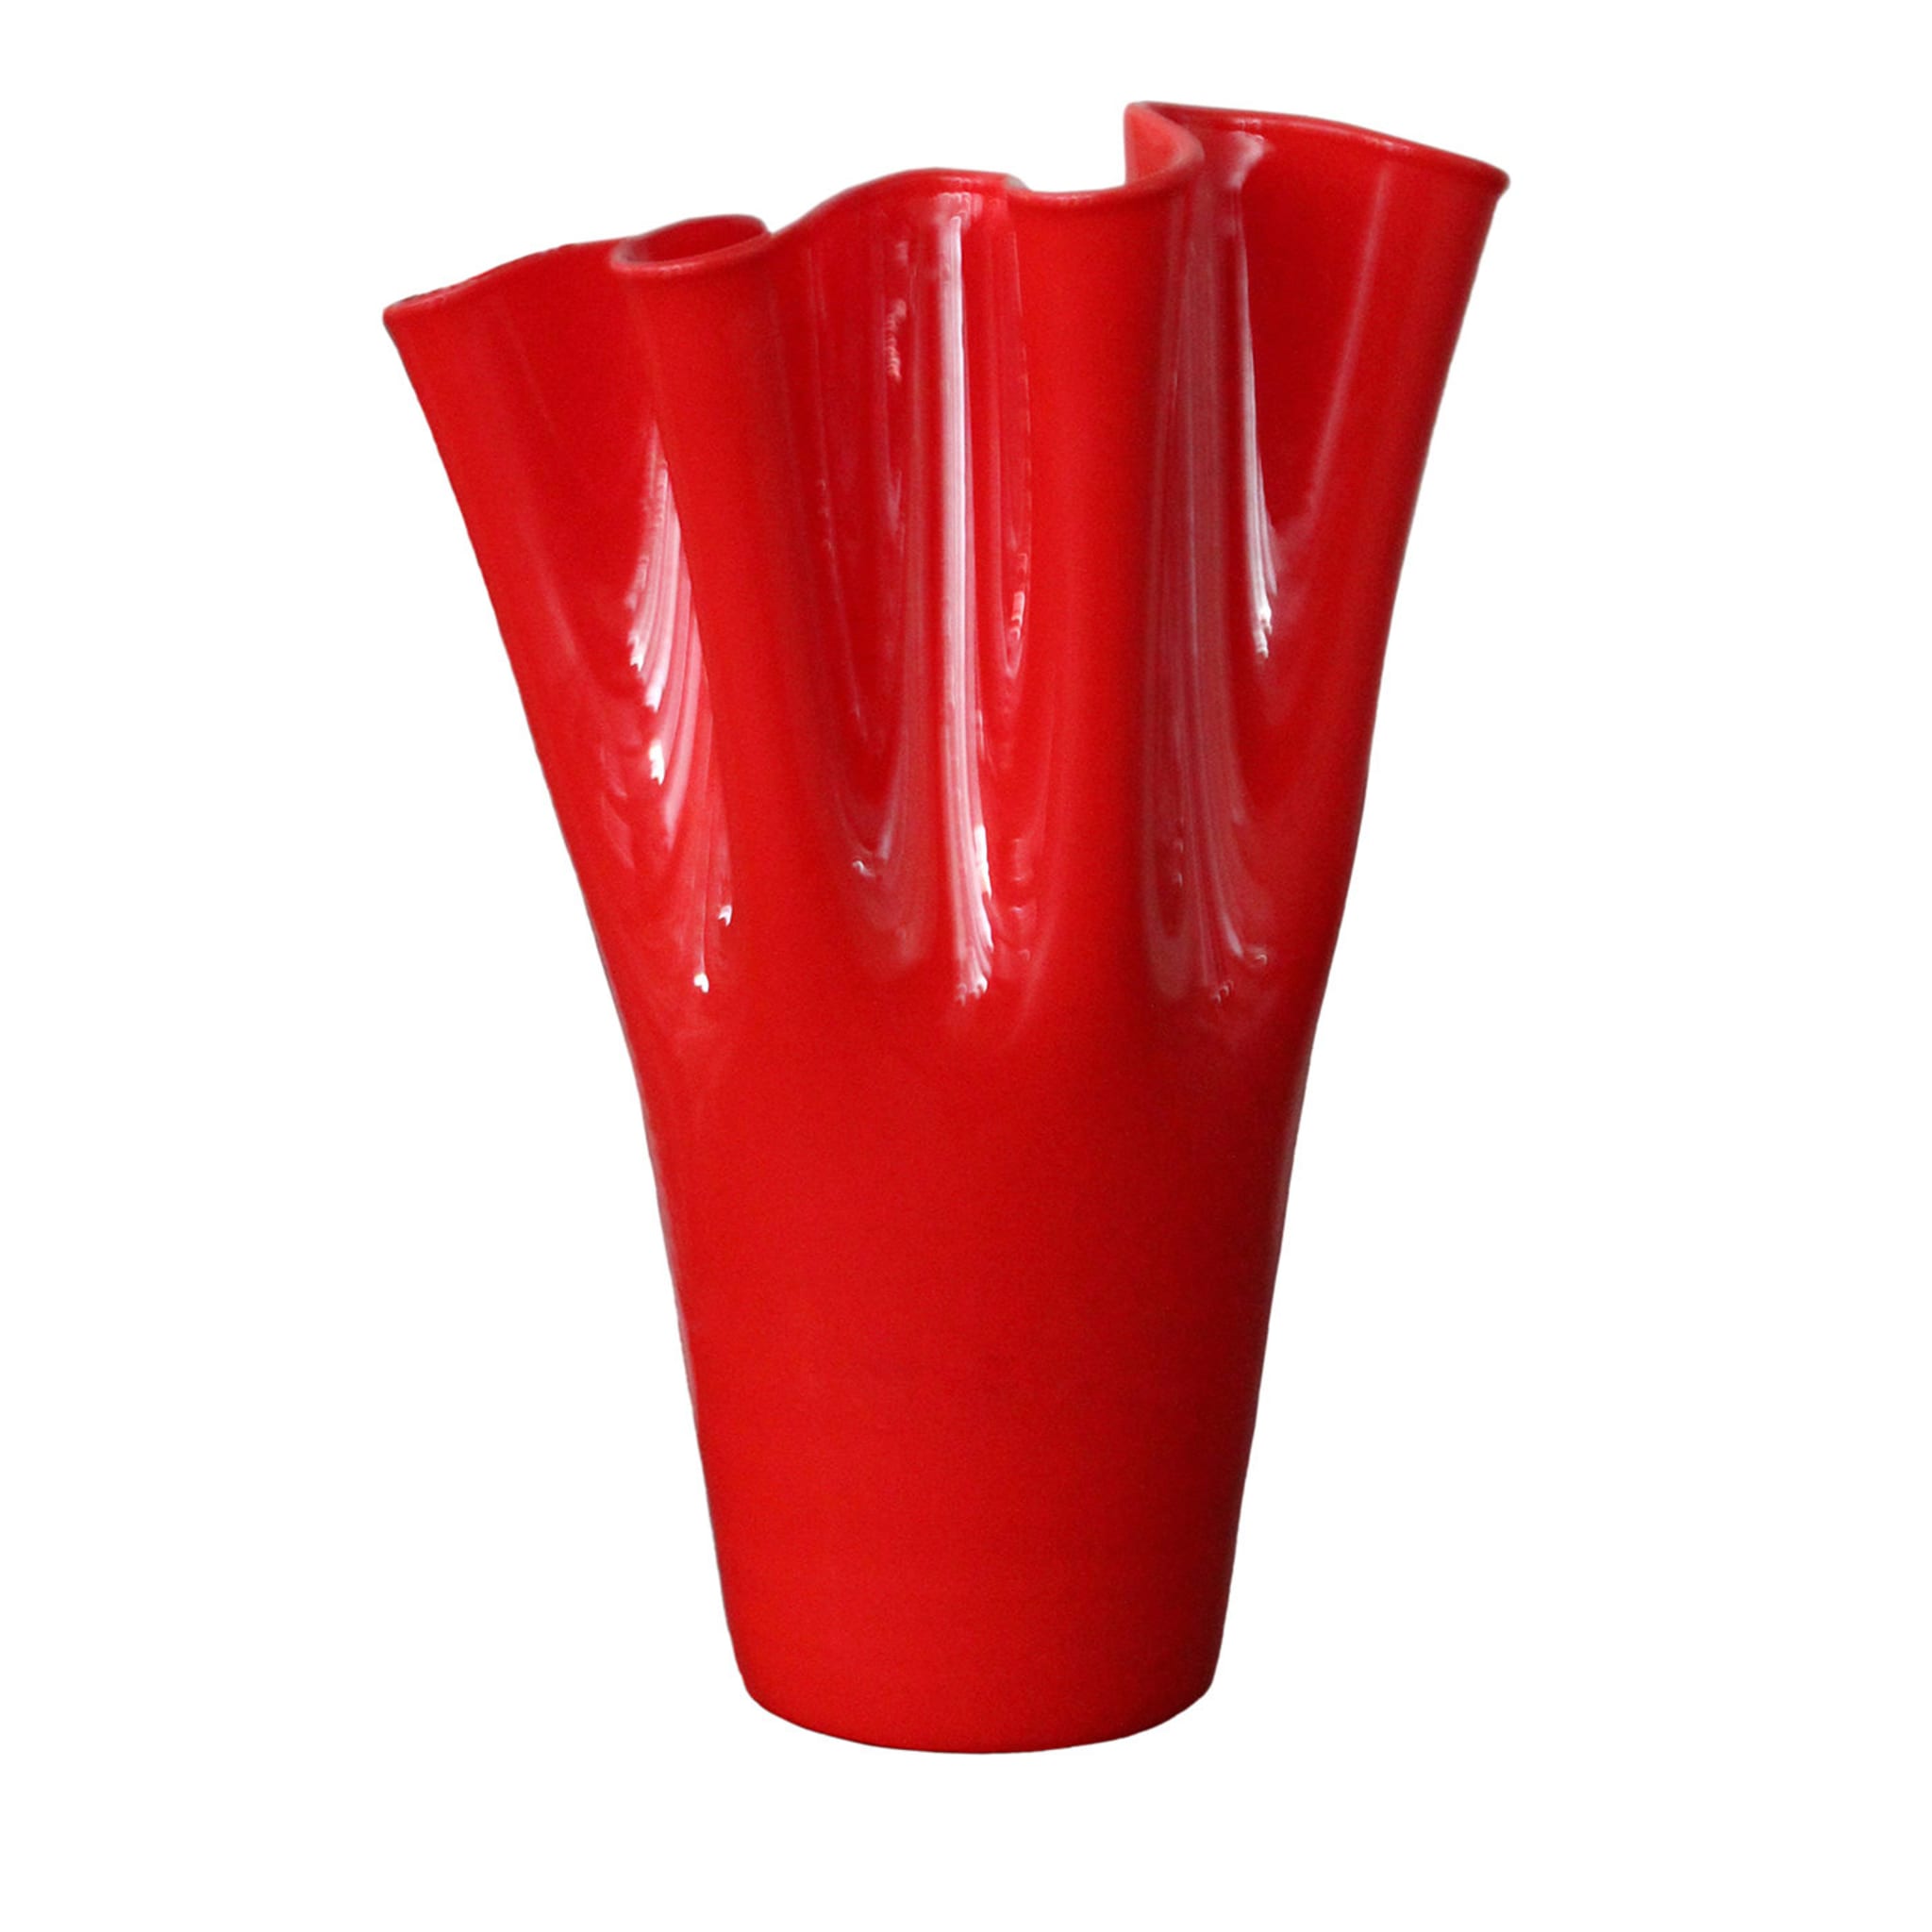 Velluto Red Vase by Fabio Casali - Main view